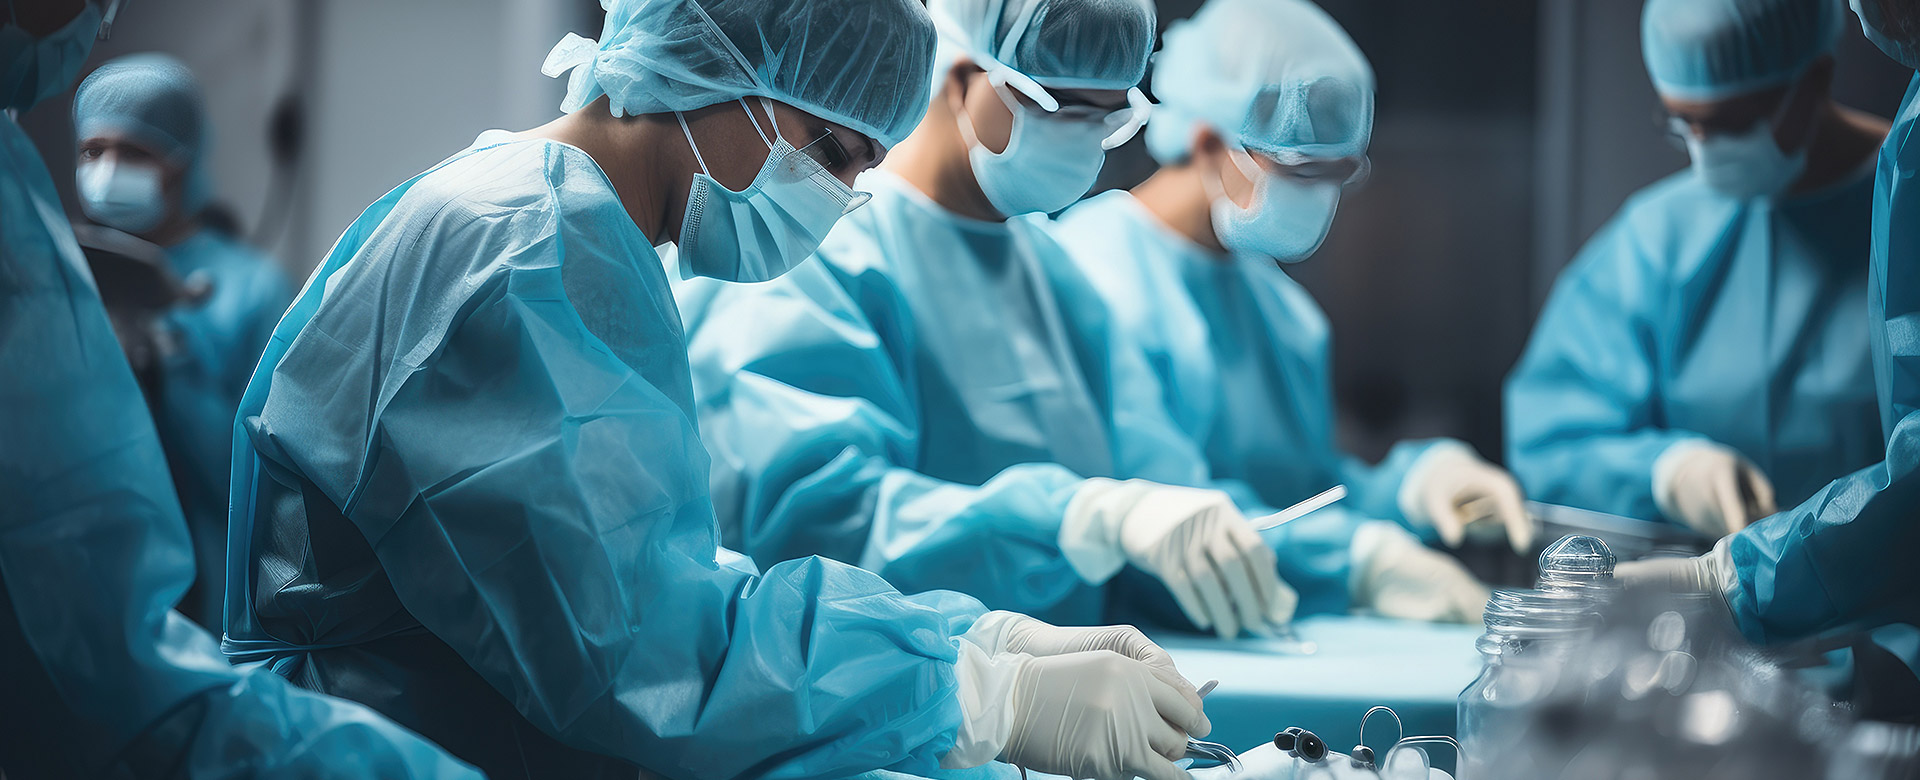 Urologie-Zentrum Günzburg-Krumbach – Die urologische Facharztpraxis in Ihrer Nähe – Leistungen, Ambulante und stationäre operative Therapie